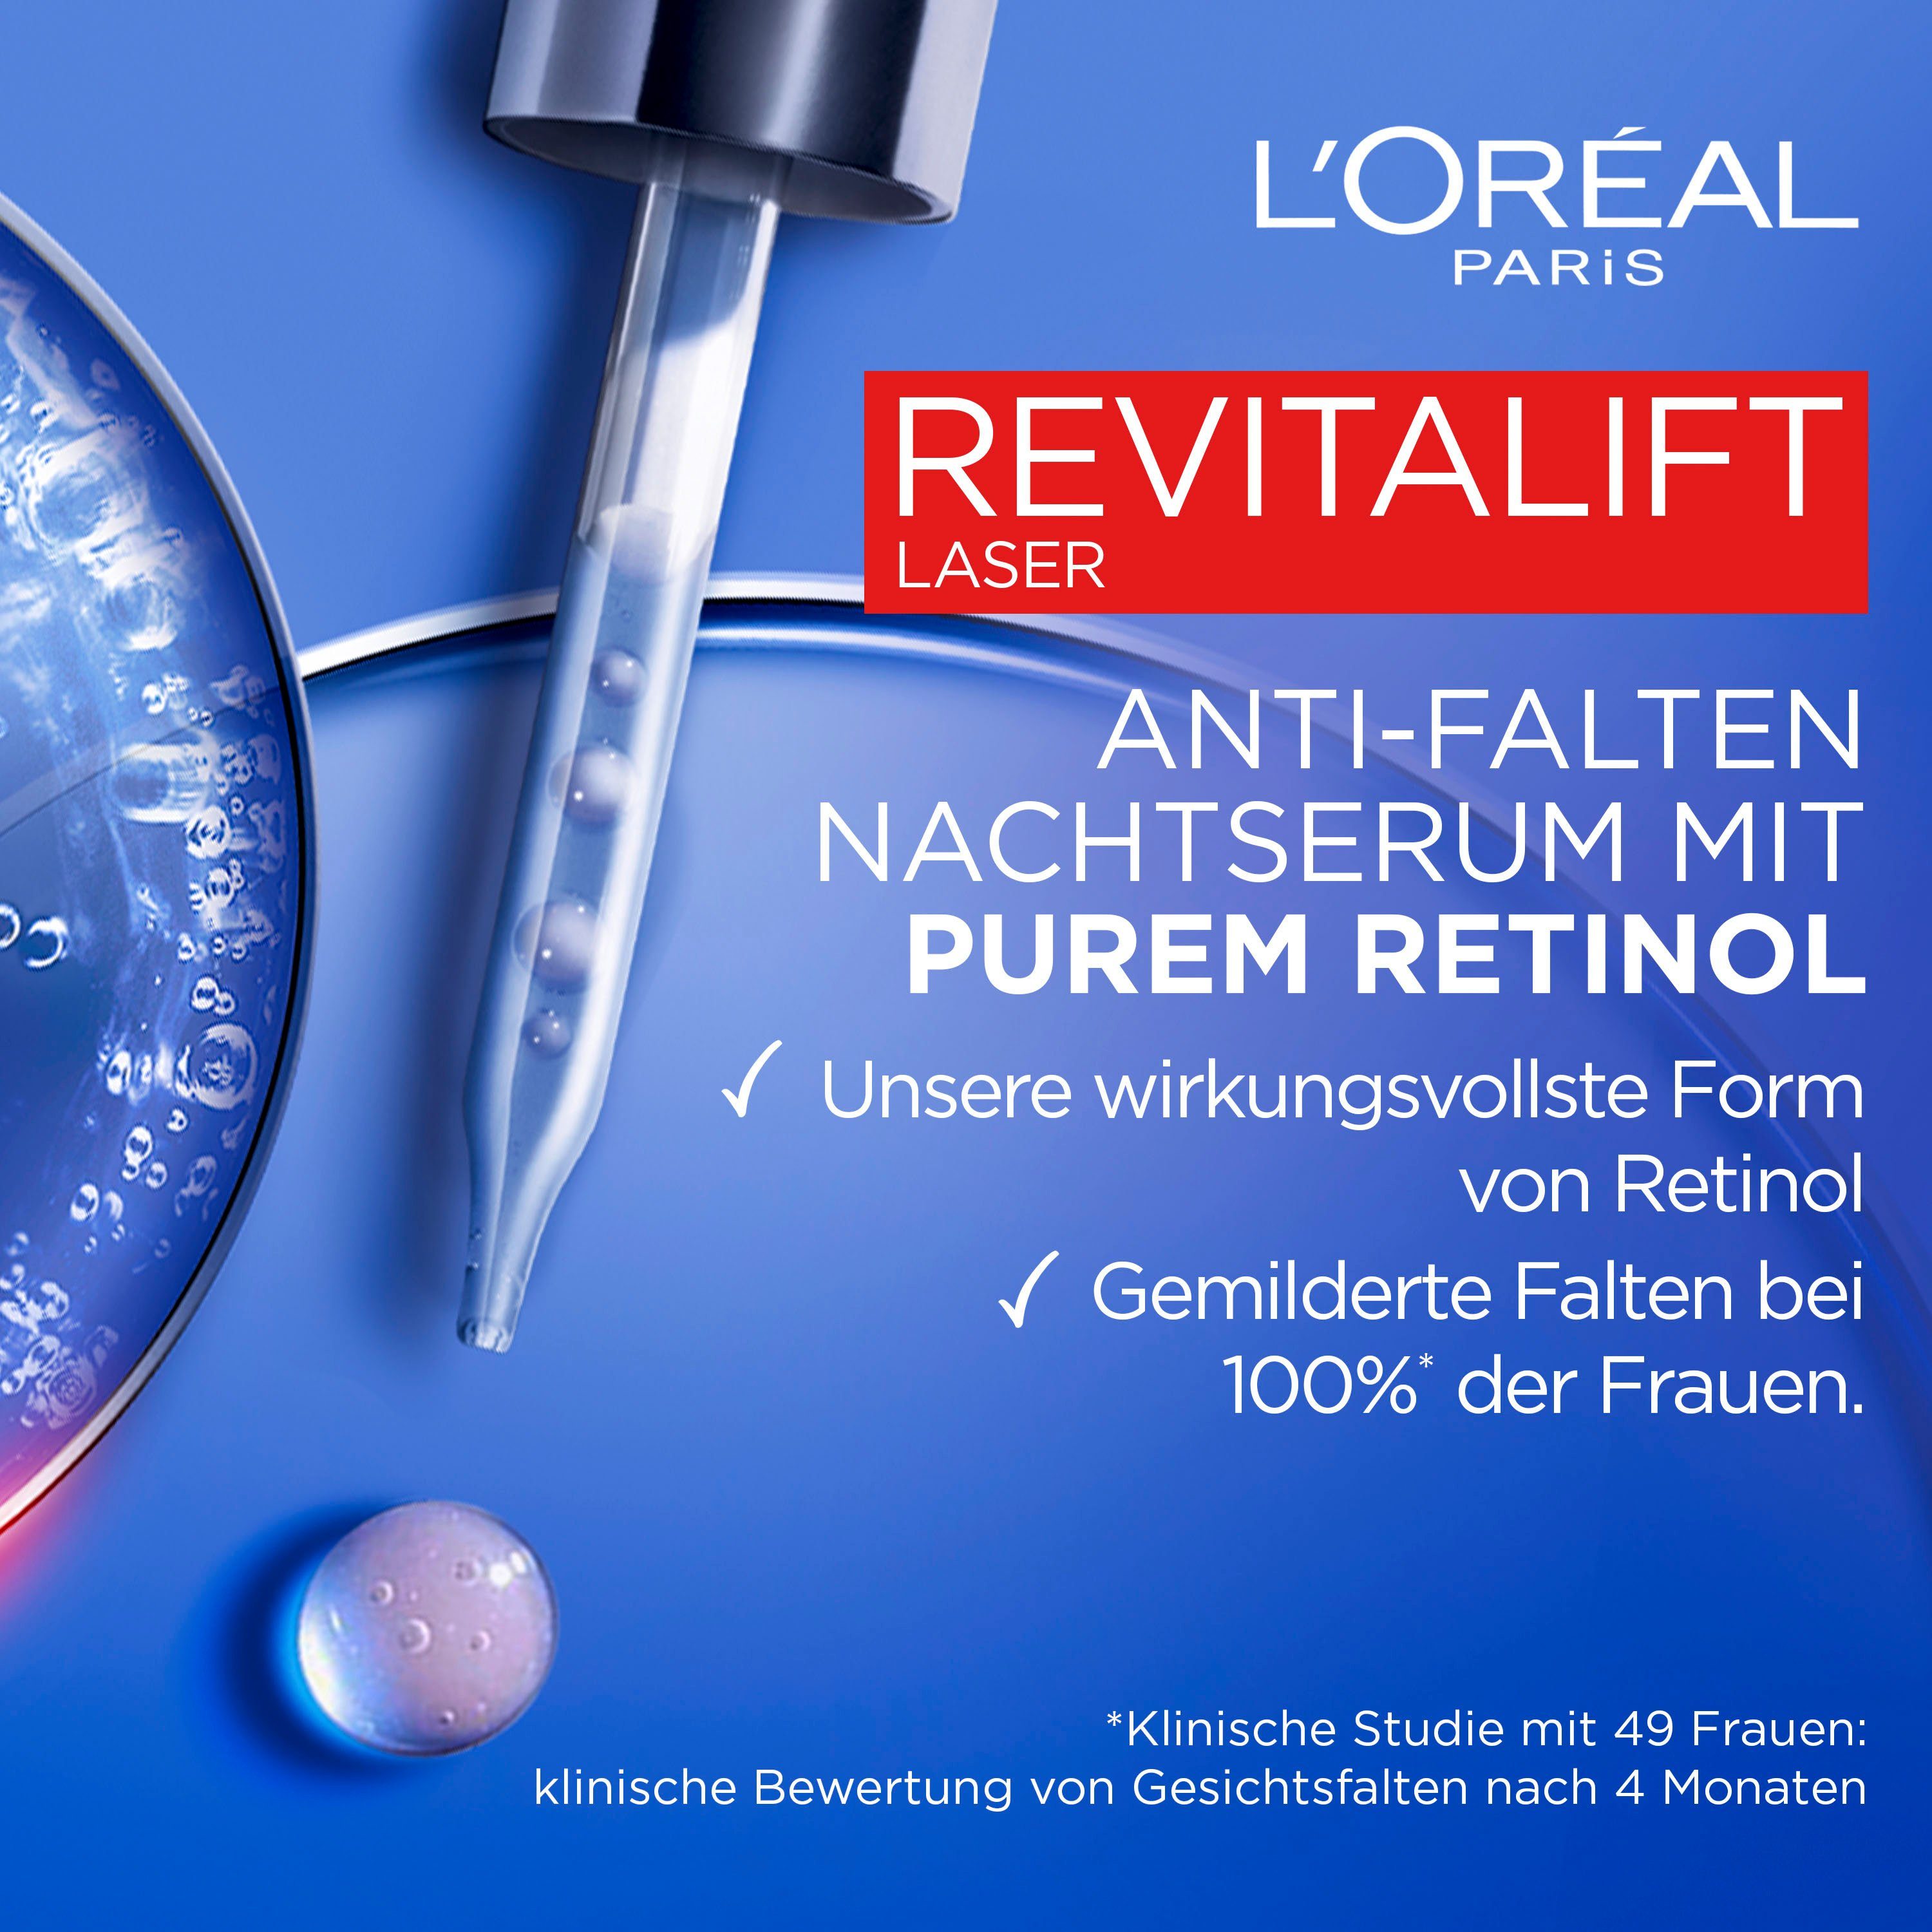 L'ORÉAL PARIS Gesichtsserum Revitalift Serum Retinol Laser